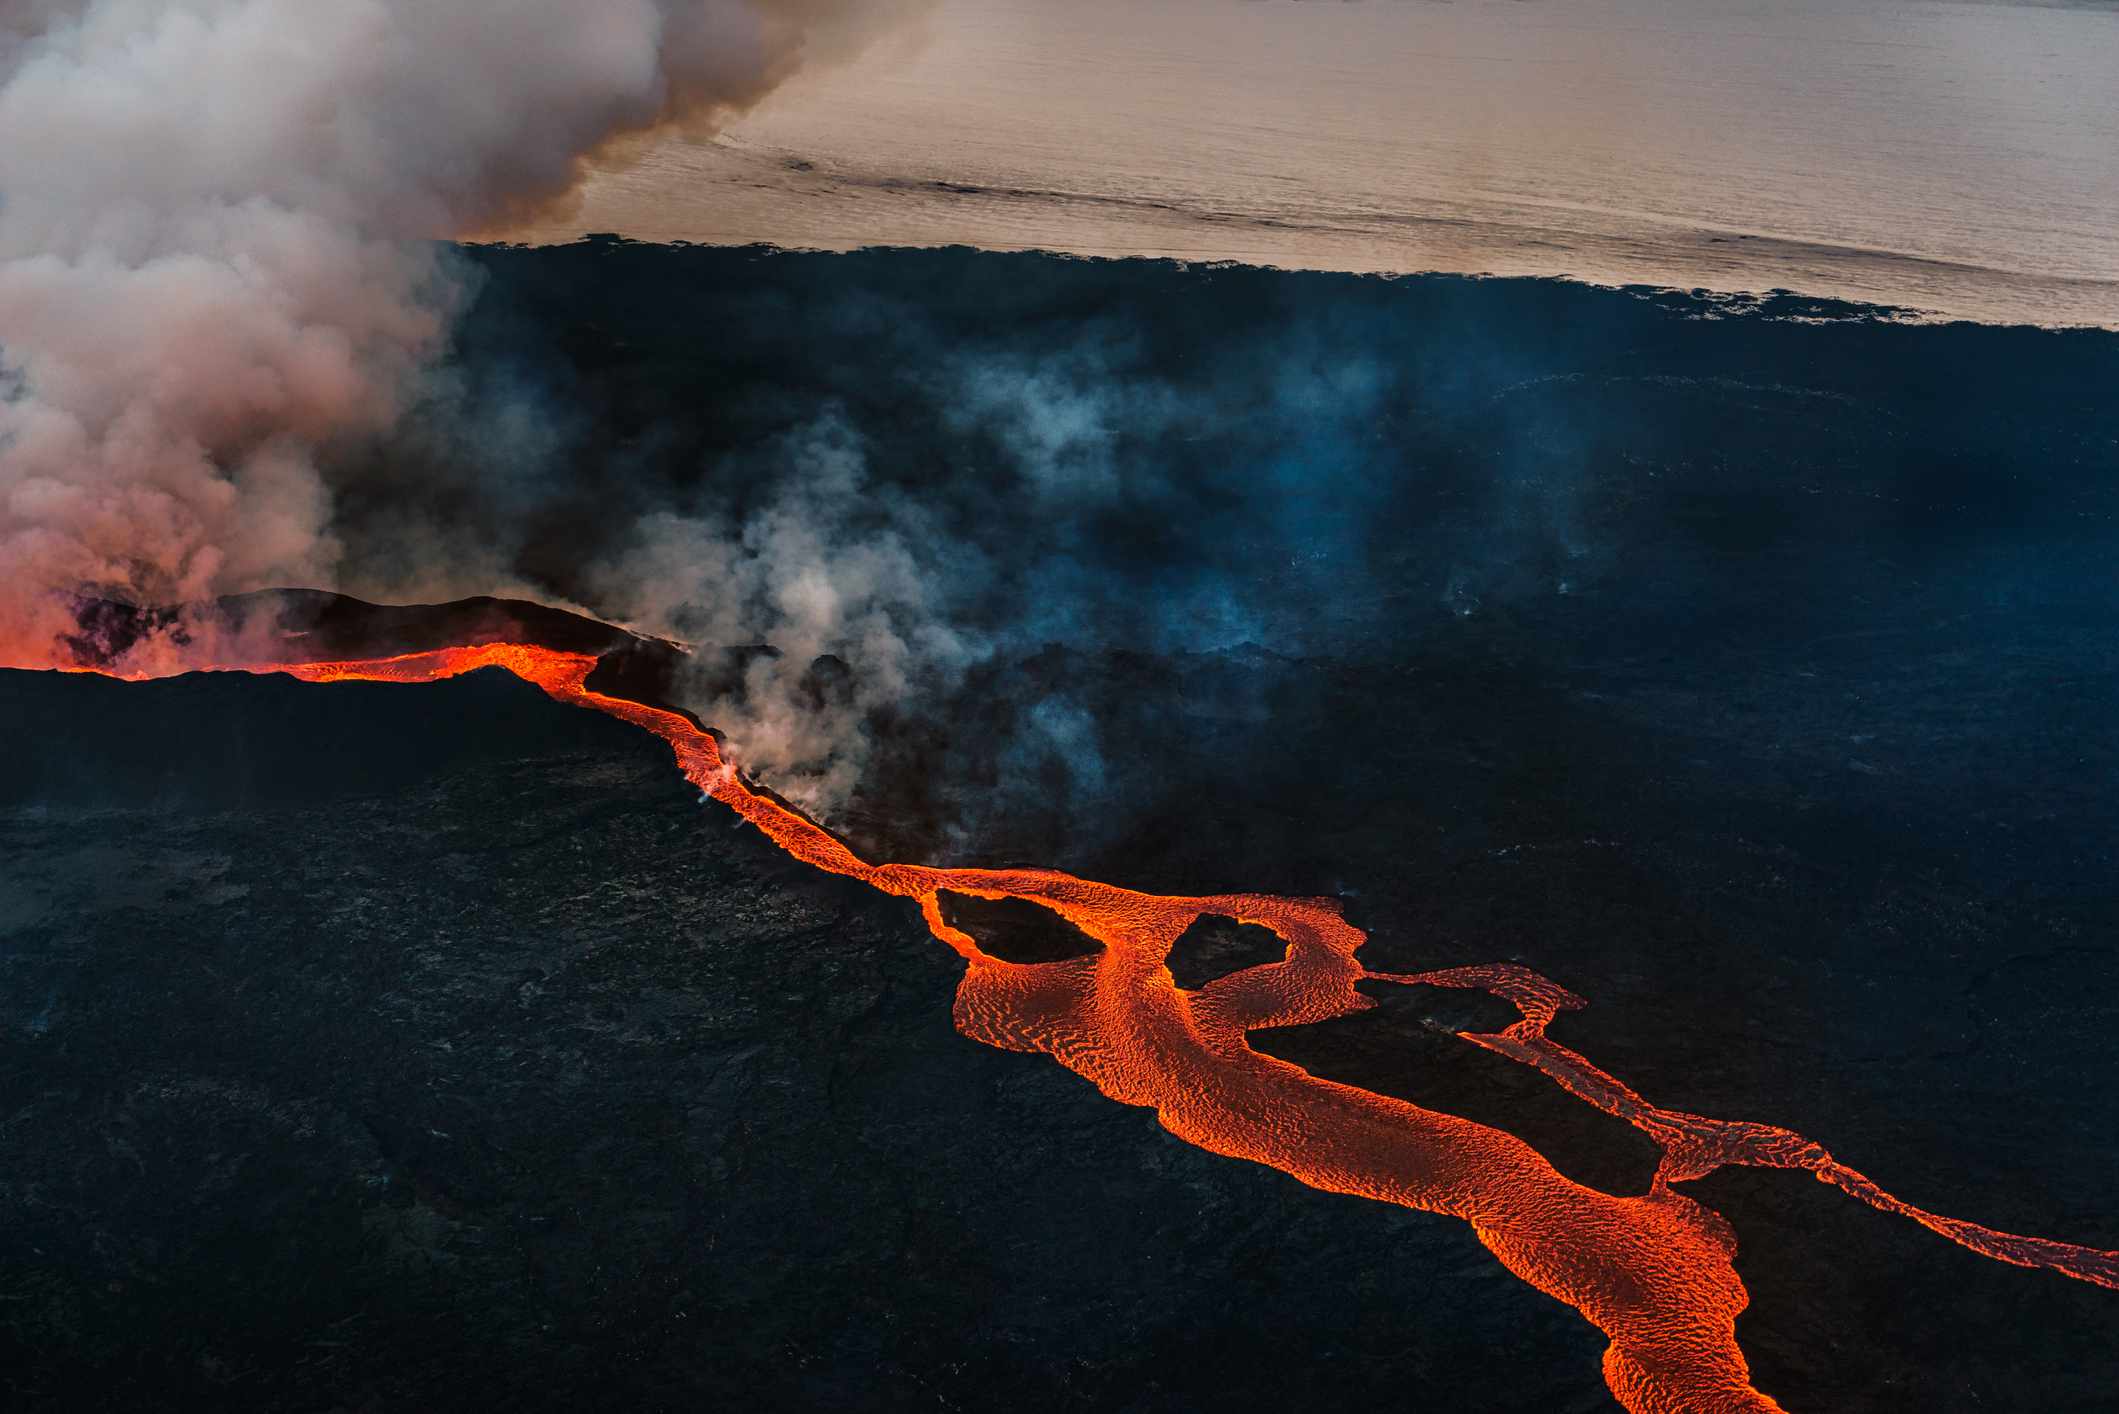 Flujos de lava procedentes de respiraderos en la corteza terrestre